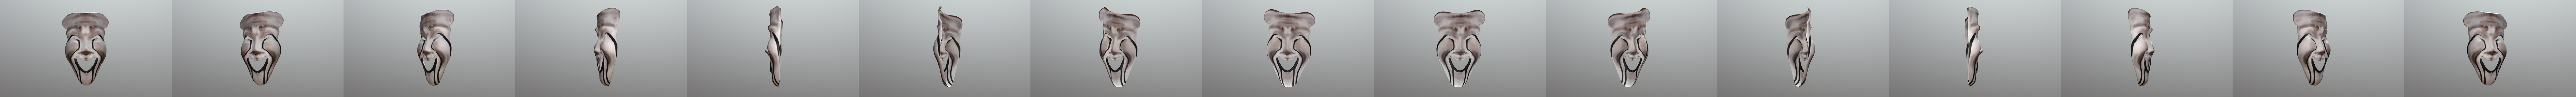 035 Mask - Download Free 3D model by ATGAZ (@ATGAZ) [a33a0a3]